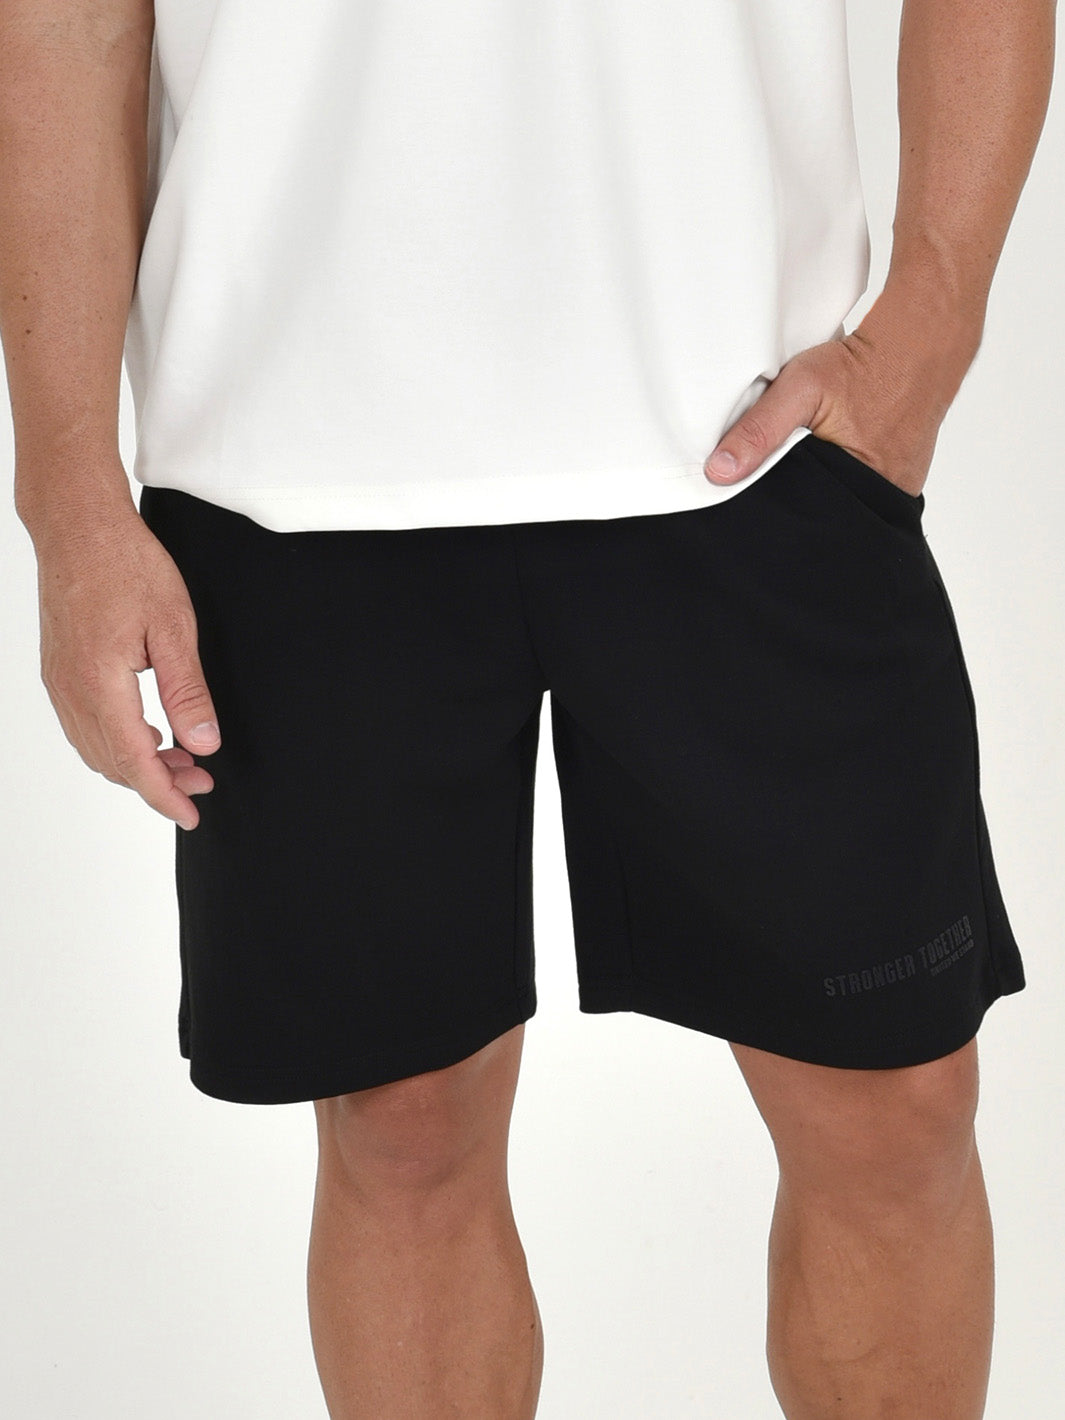 Men ADOS- Blended Cotton Shorts Stronger Together